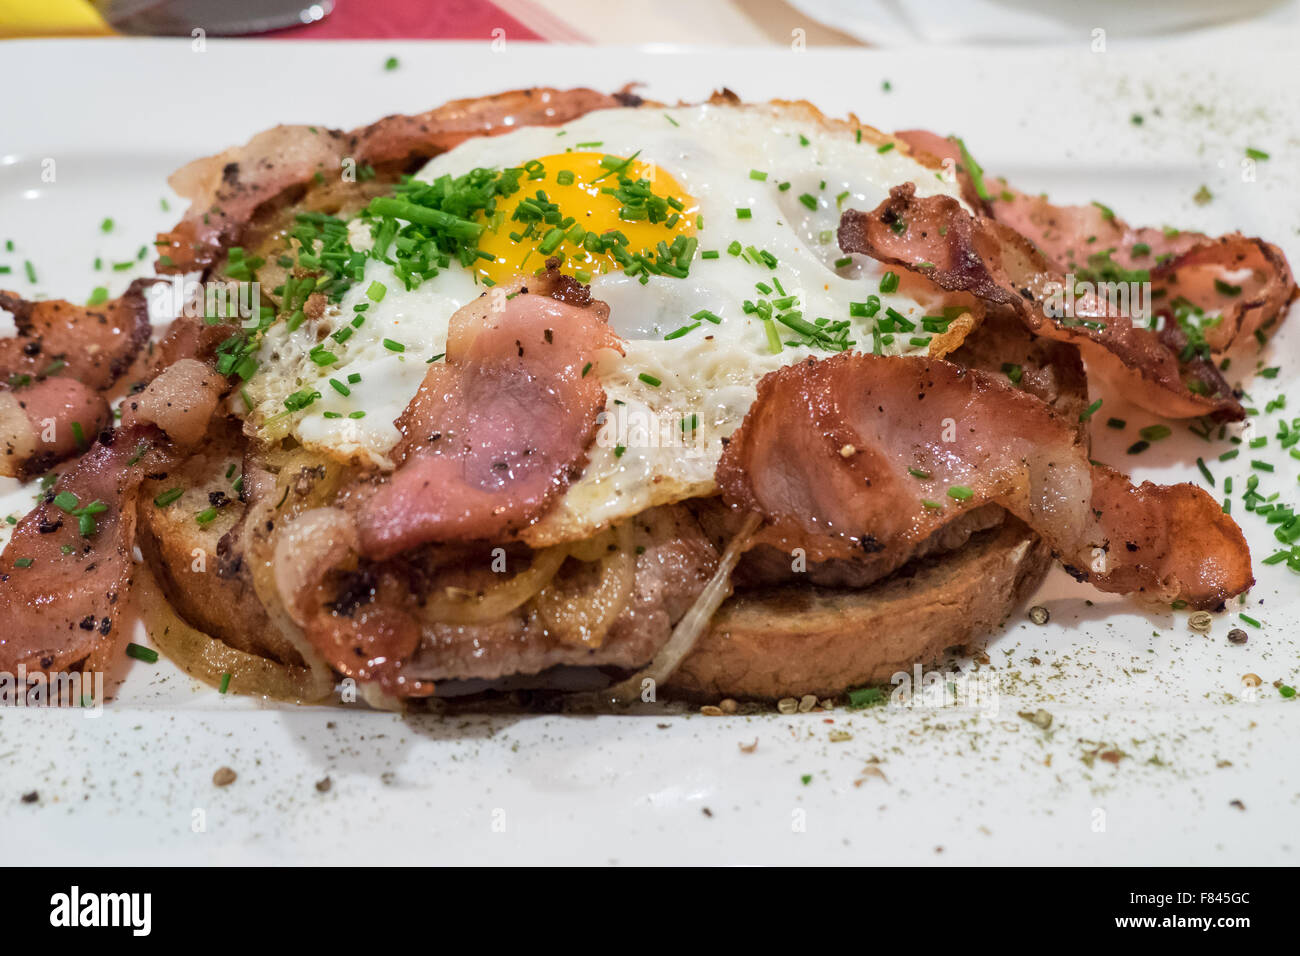 Bauerntoast préparés avec de la viande, du bacon, du pain et des oeufs sur le dessus, plat traditionnel de l'Alto Adige et Tyrol du Sud. Banque D'Images